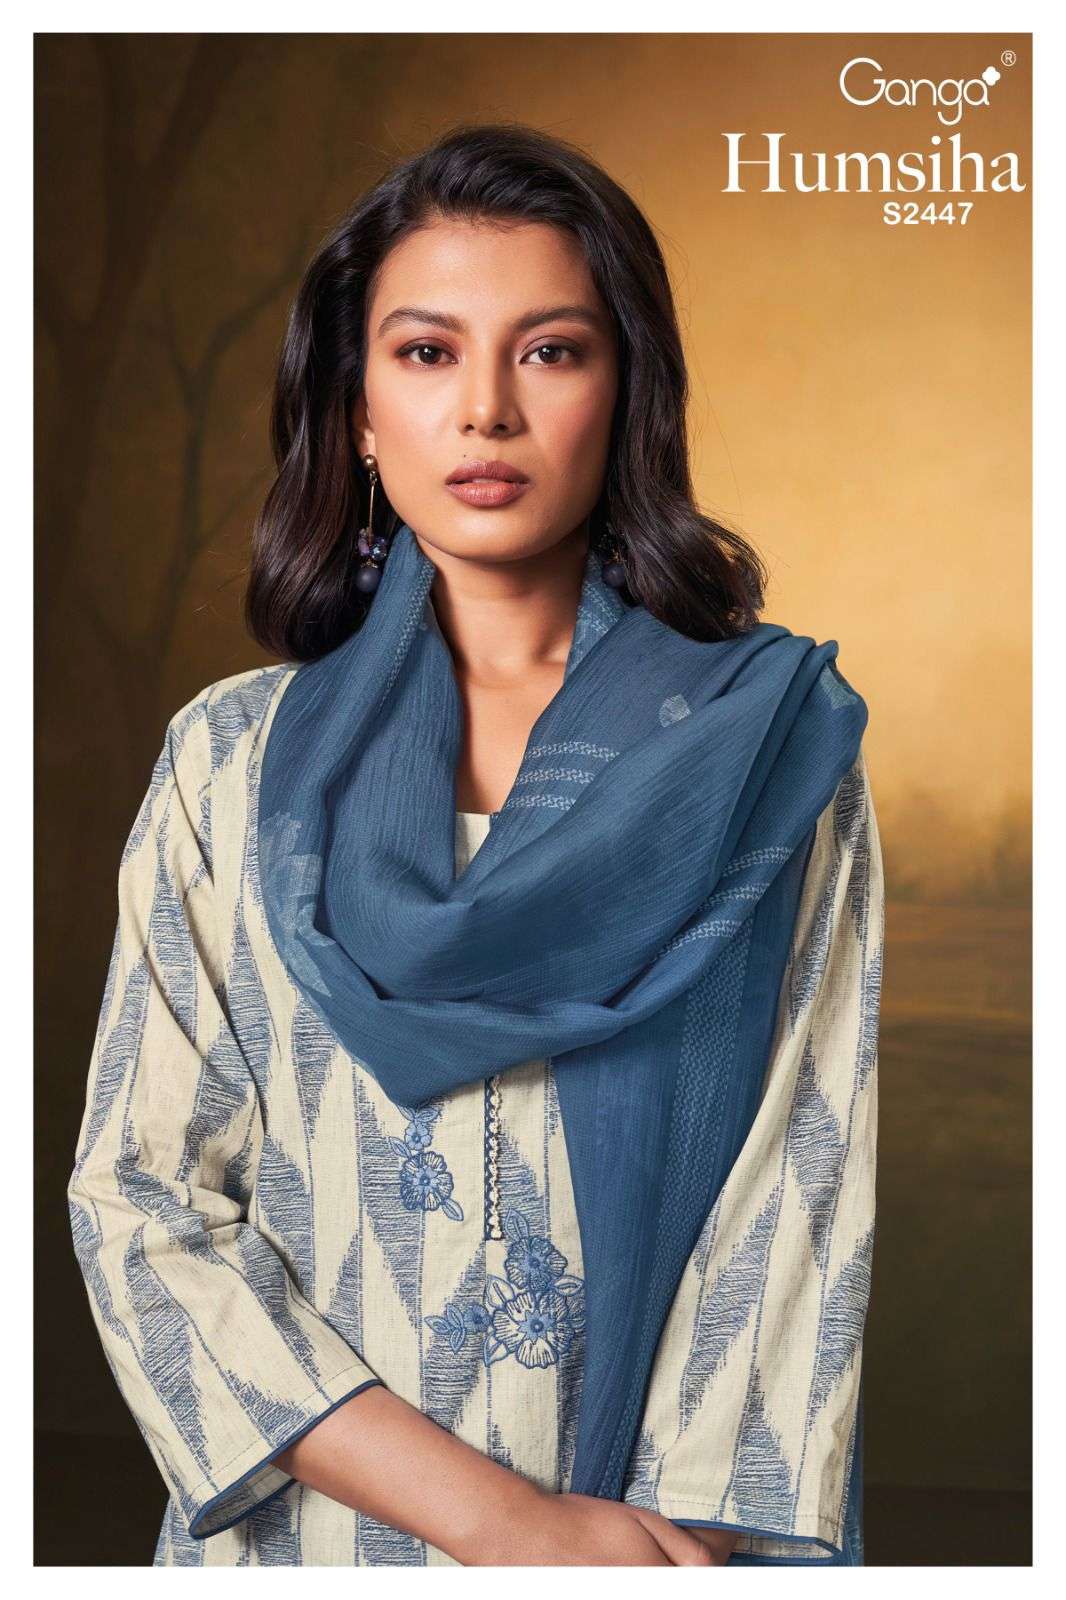 humsiha 2447 by ganga premium cotton designer salwar kameez wholesale price surat gujarat 